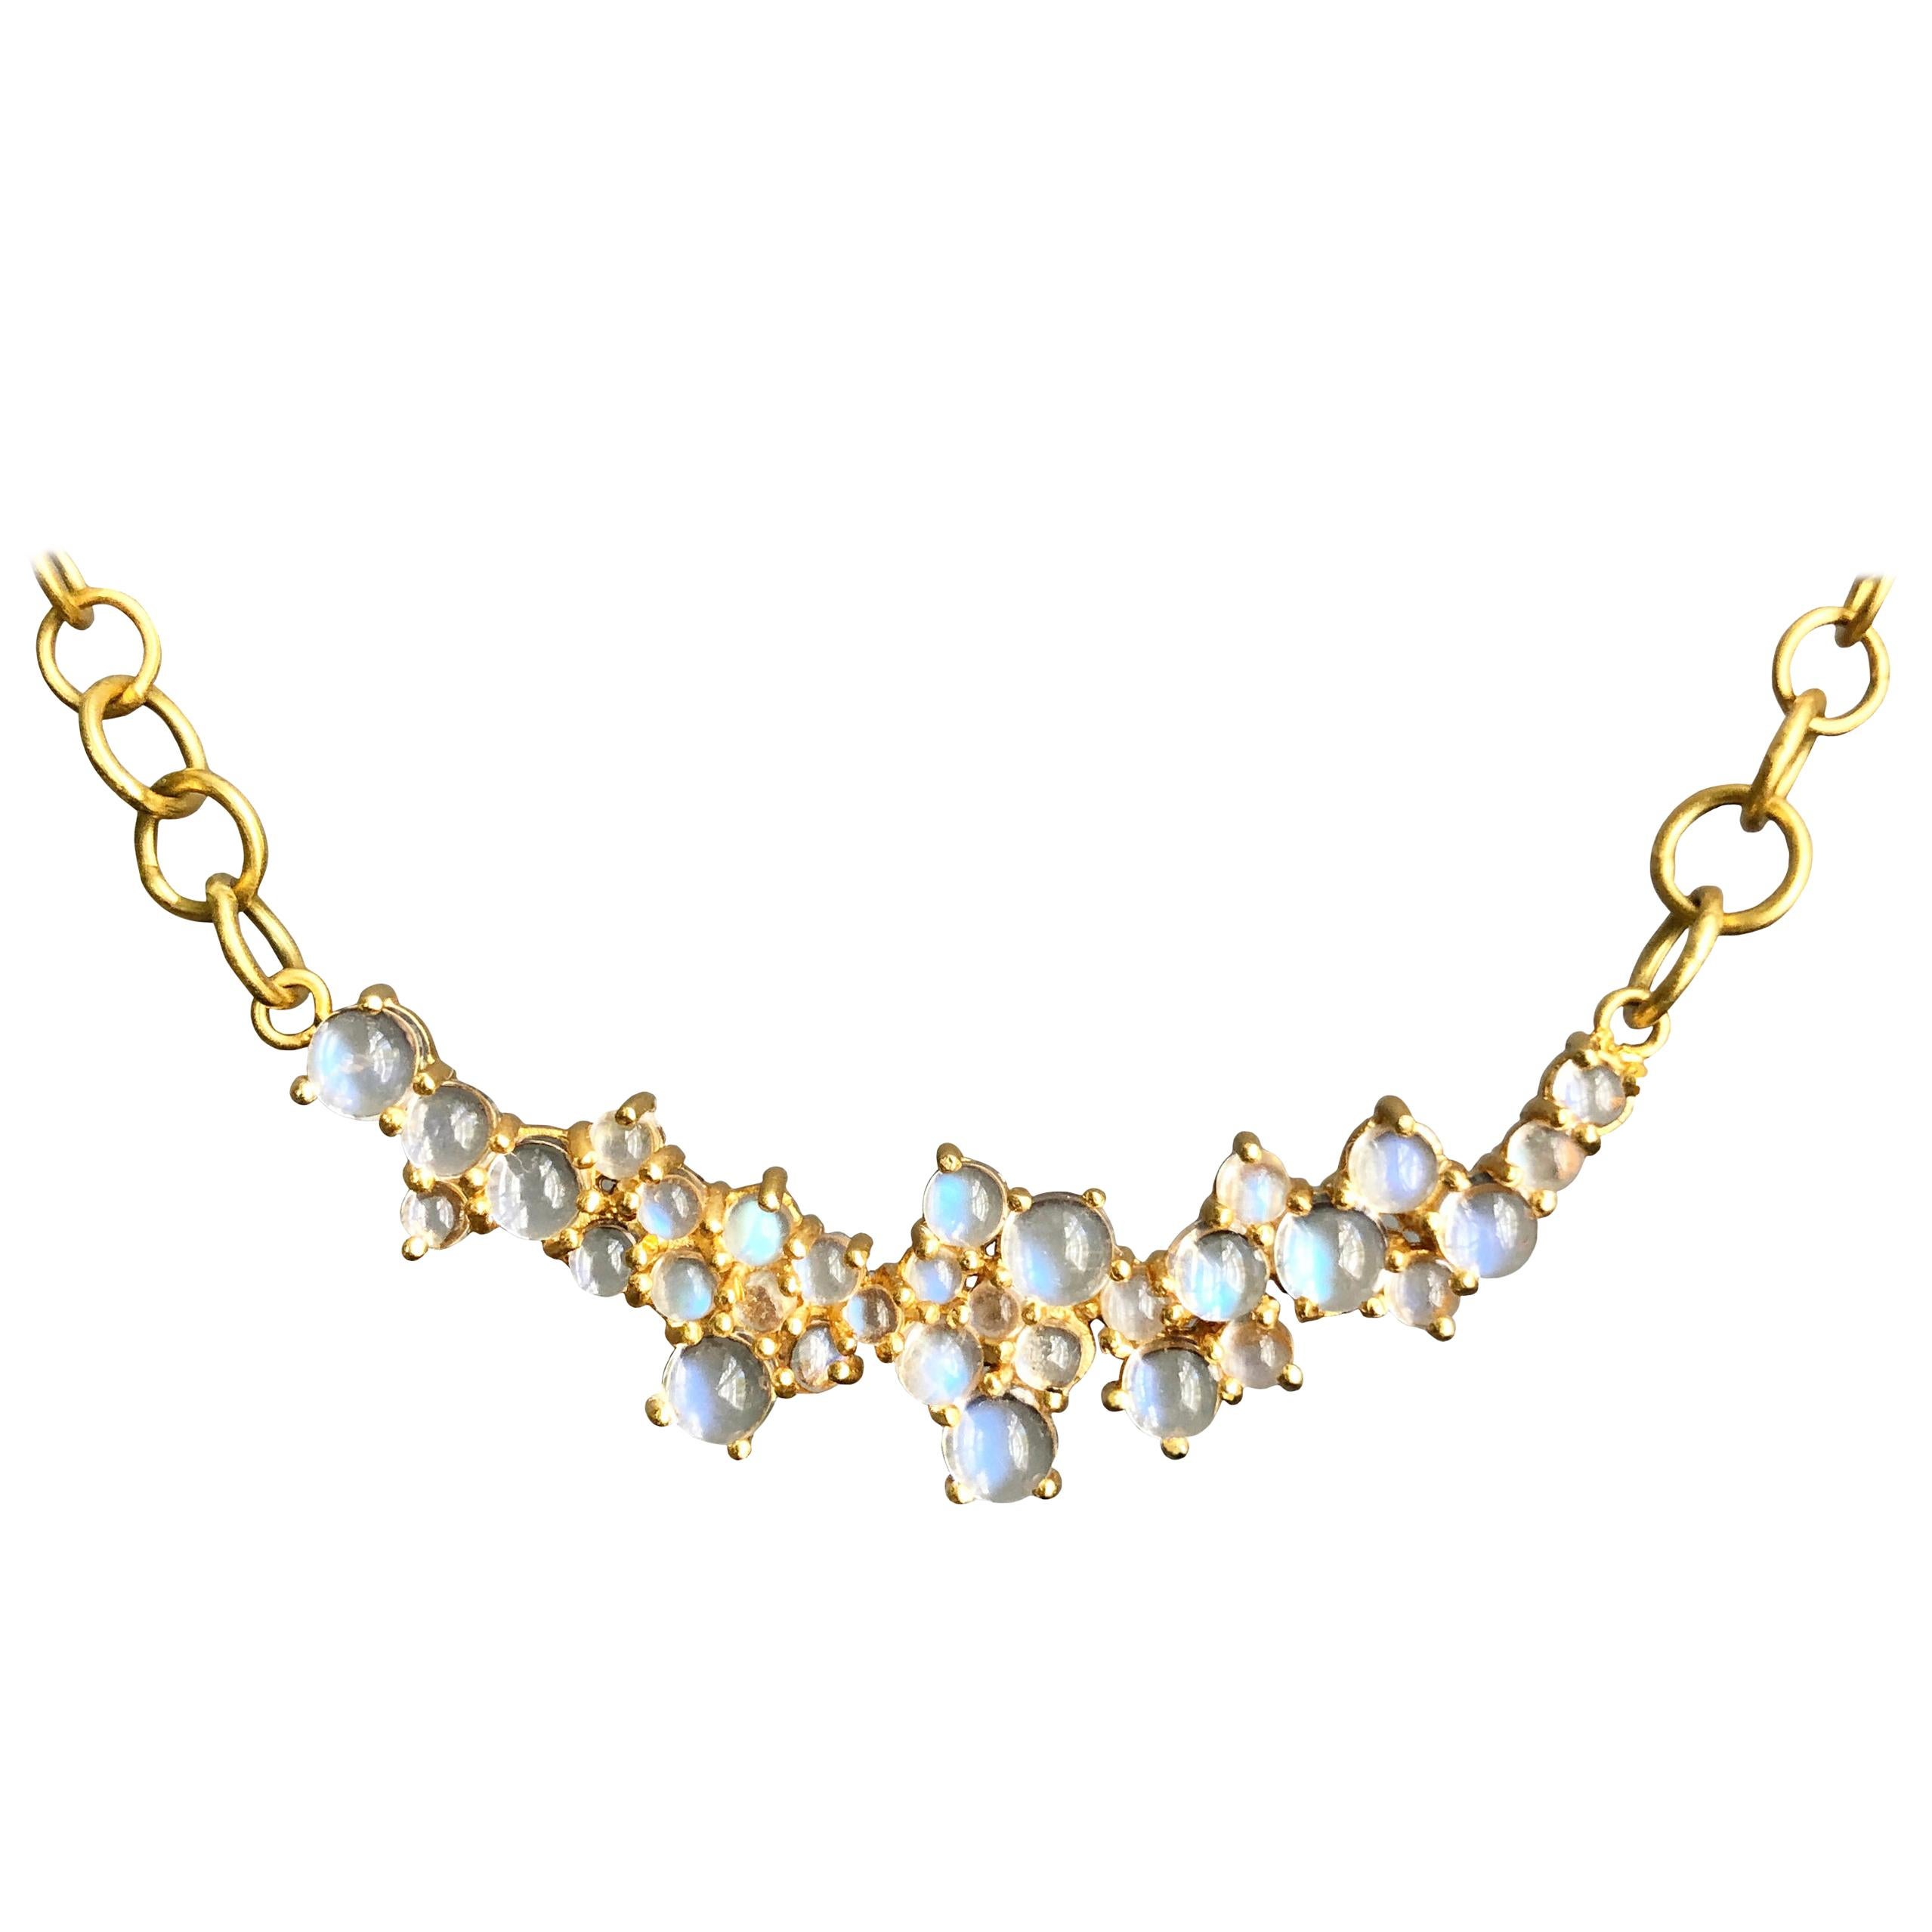 3.79 Carat Rainbow Moonstone Gold Necklace by Lauren Harper